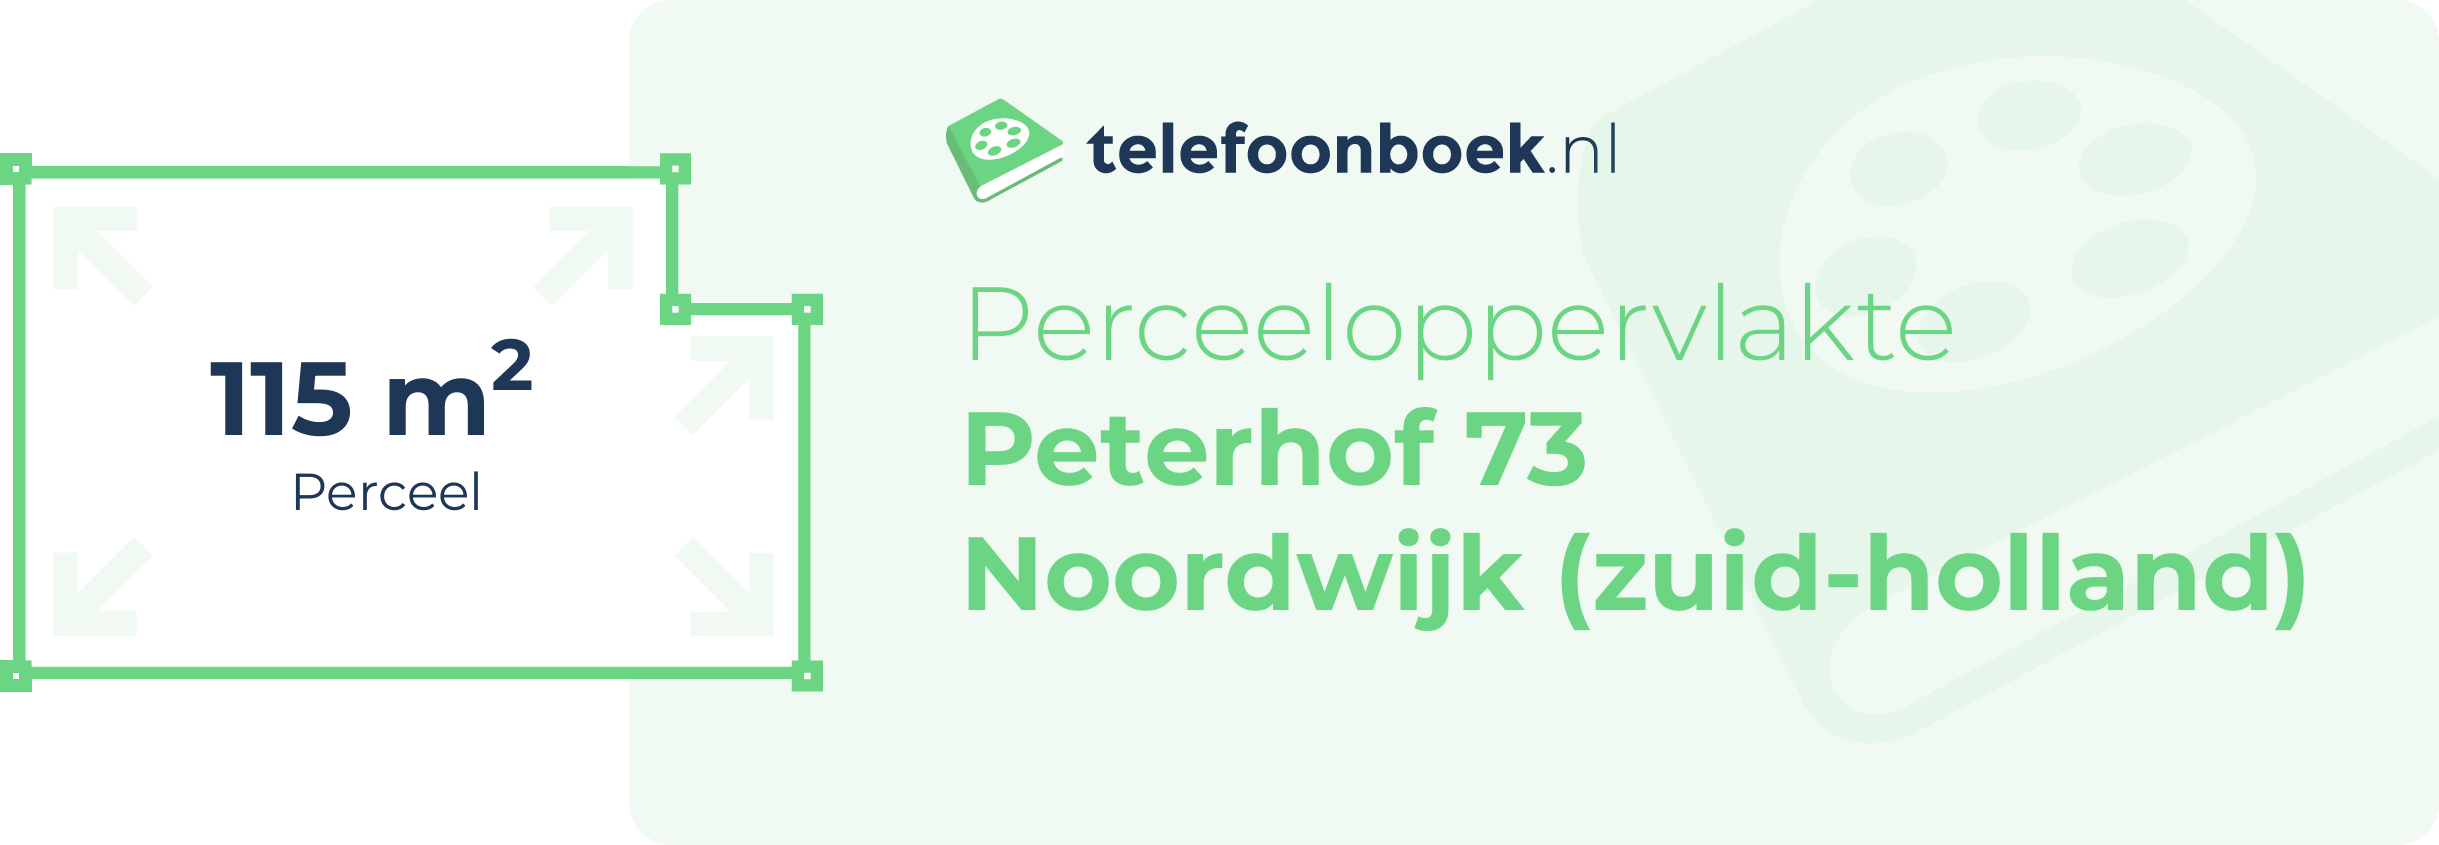 Perceeloppervlakte Peterhof 73 Noordwijk (Zuid-Holland)